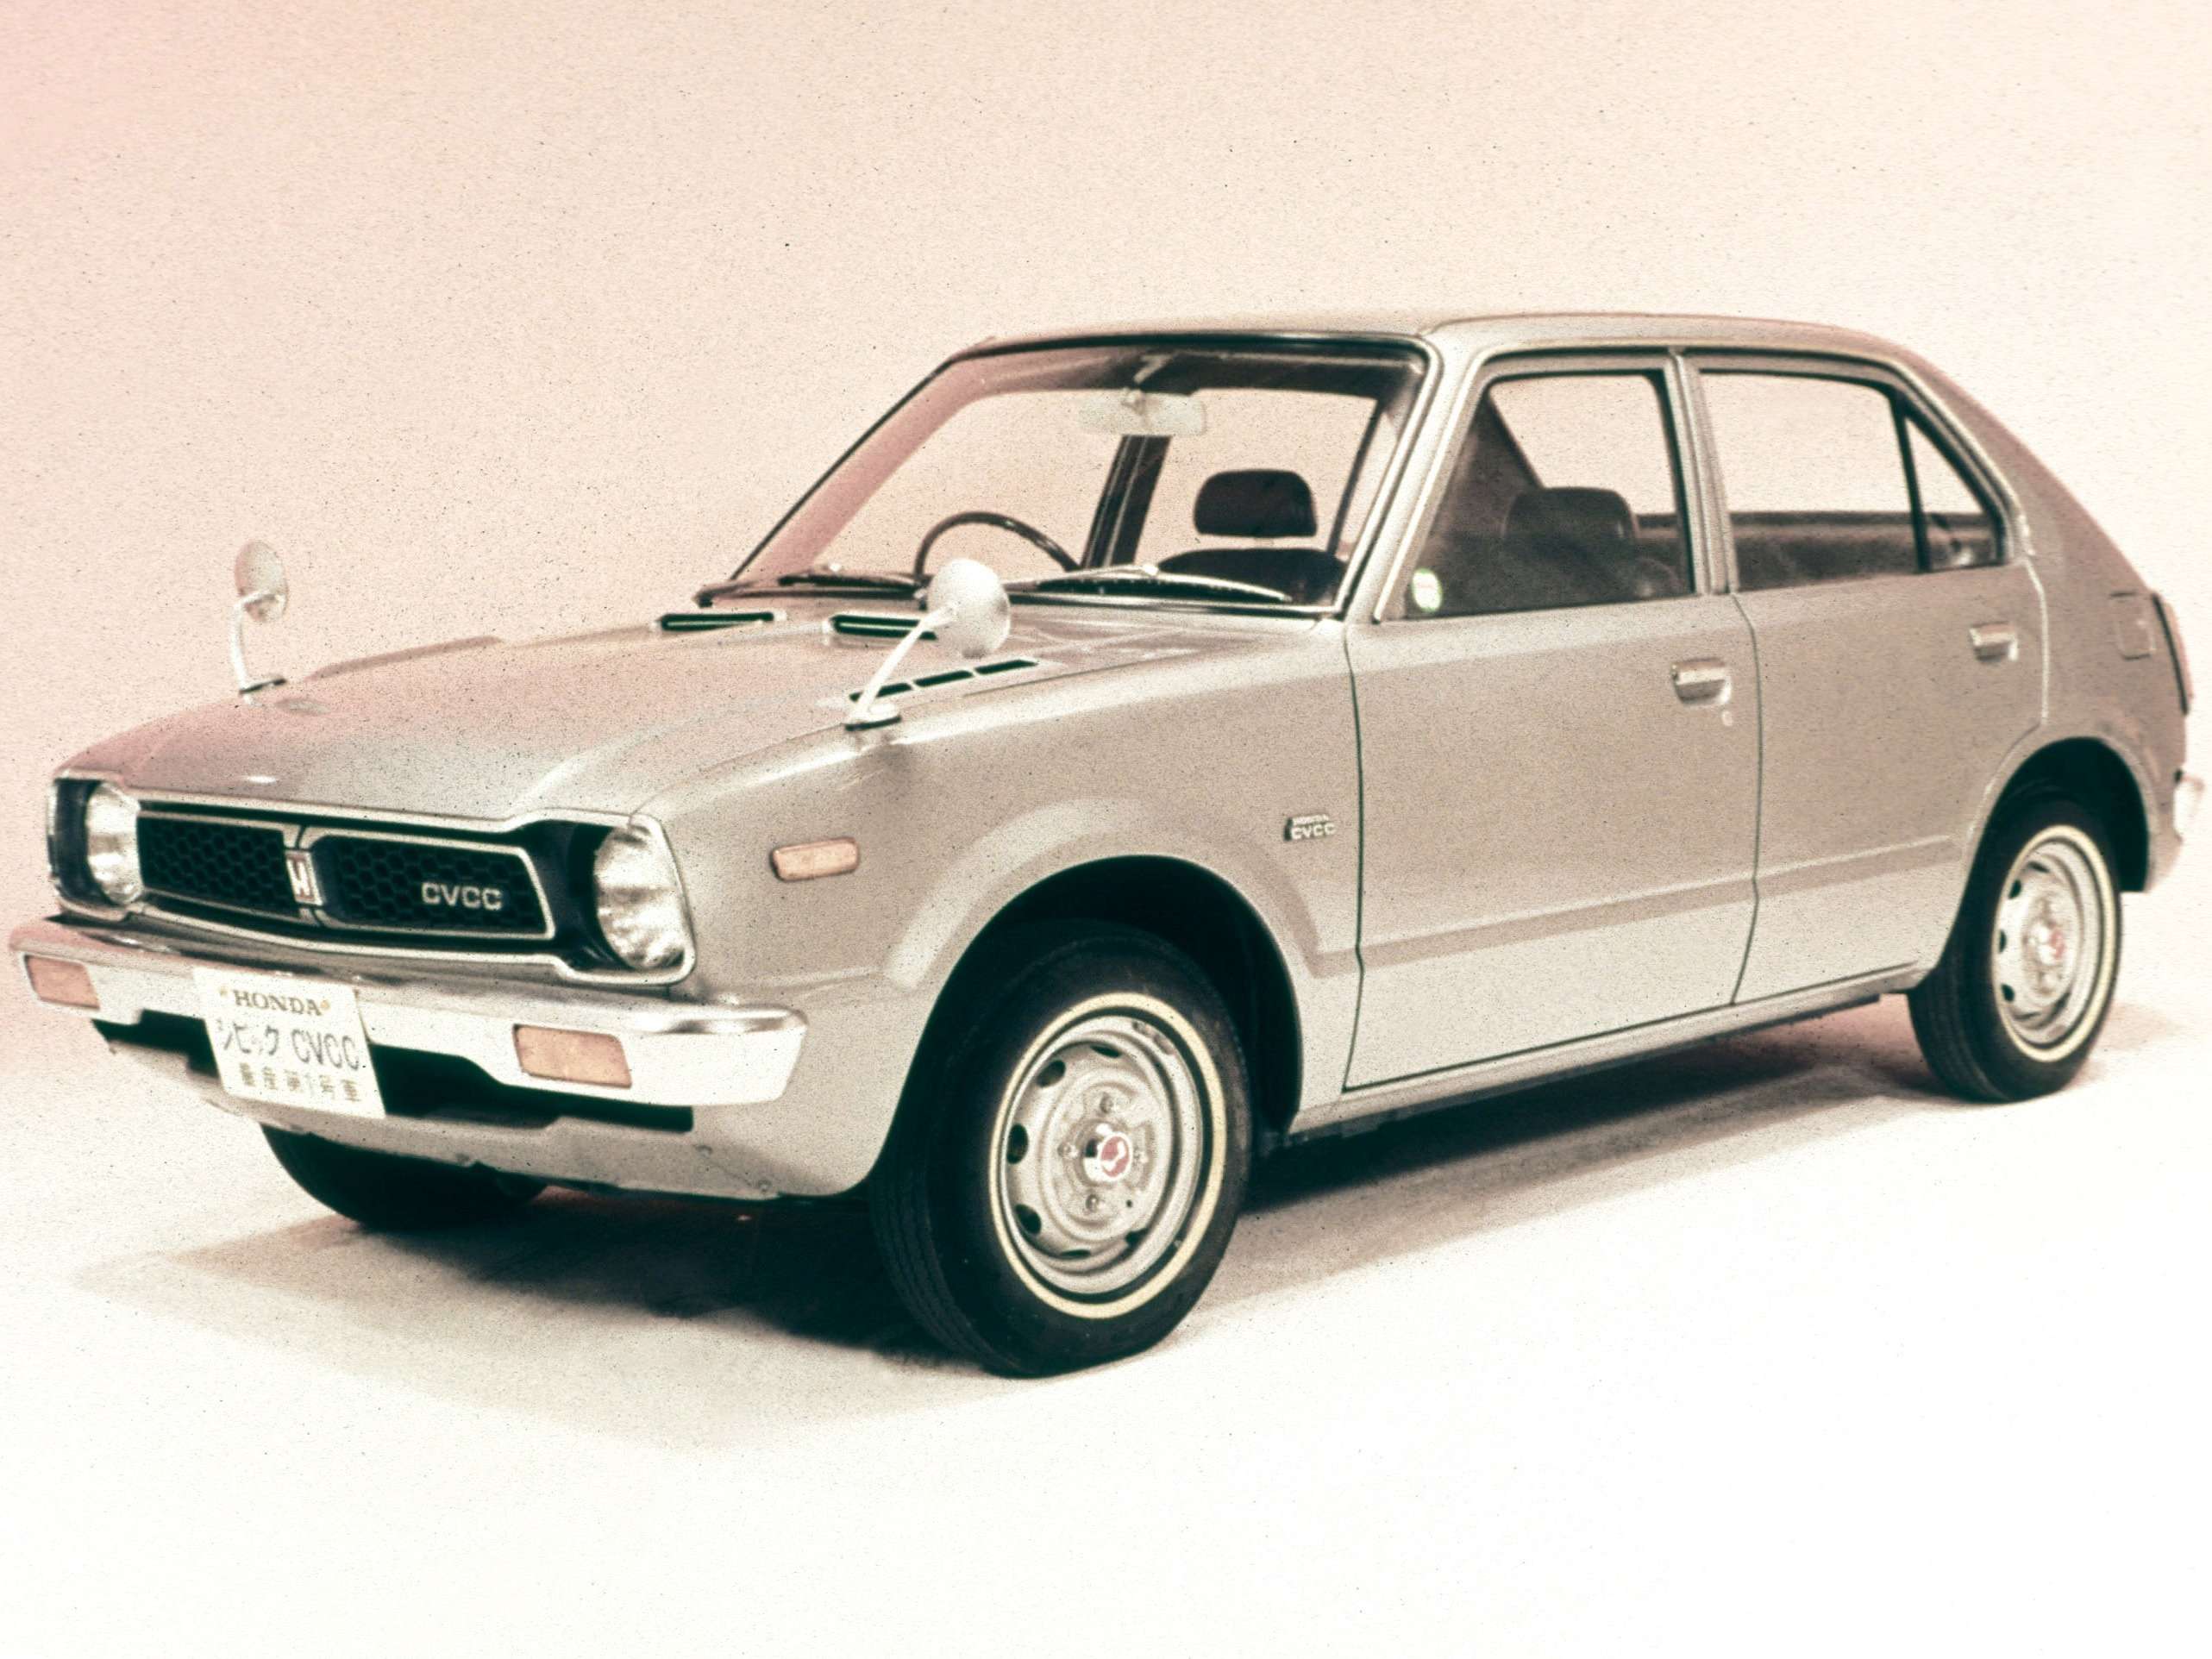 Первое поколение автомобилей. Honda Civic 1 поколение. Honda Civic 1973. Honda Civic 1972. Honda Civic 1 поколение хэтчбек 1972.